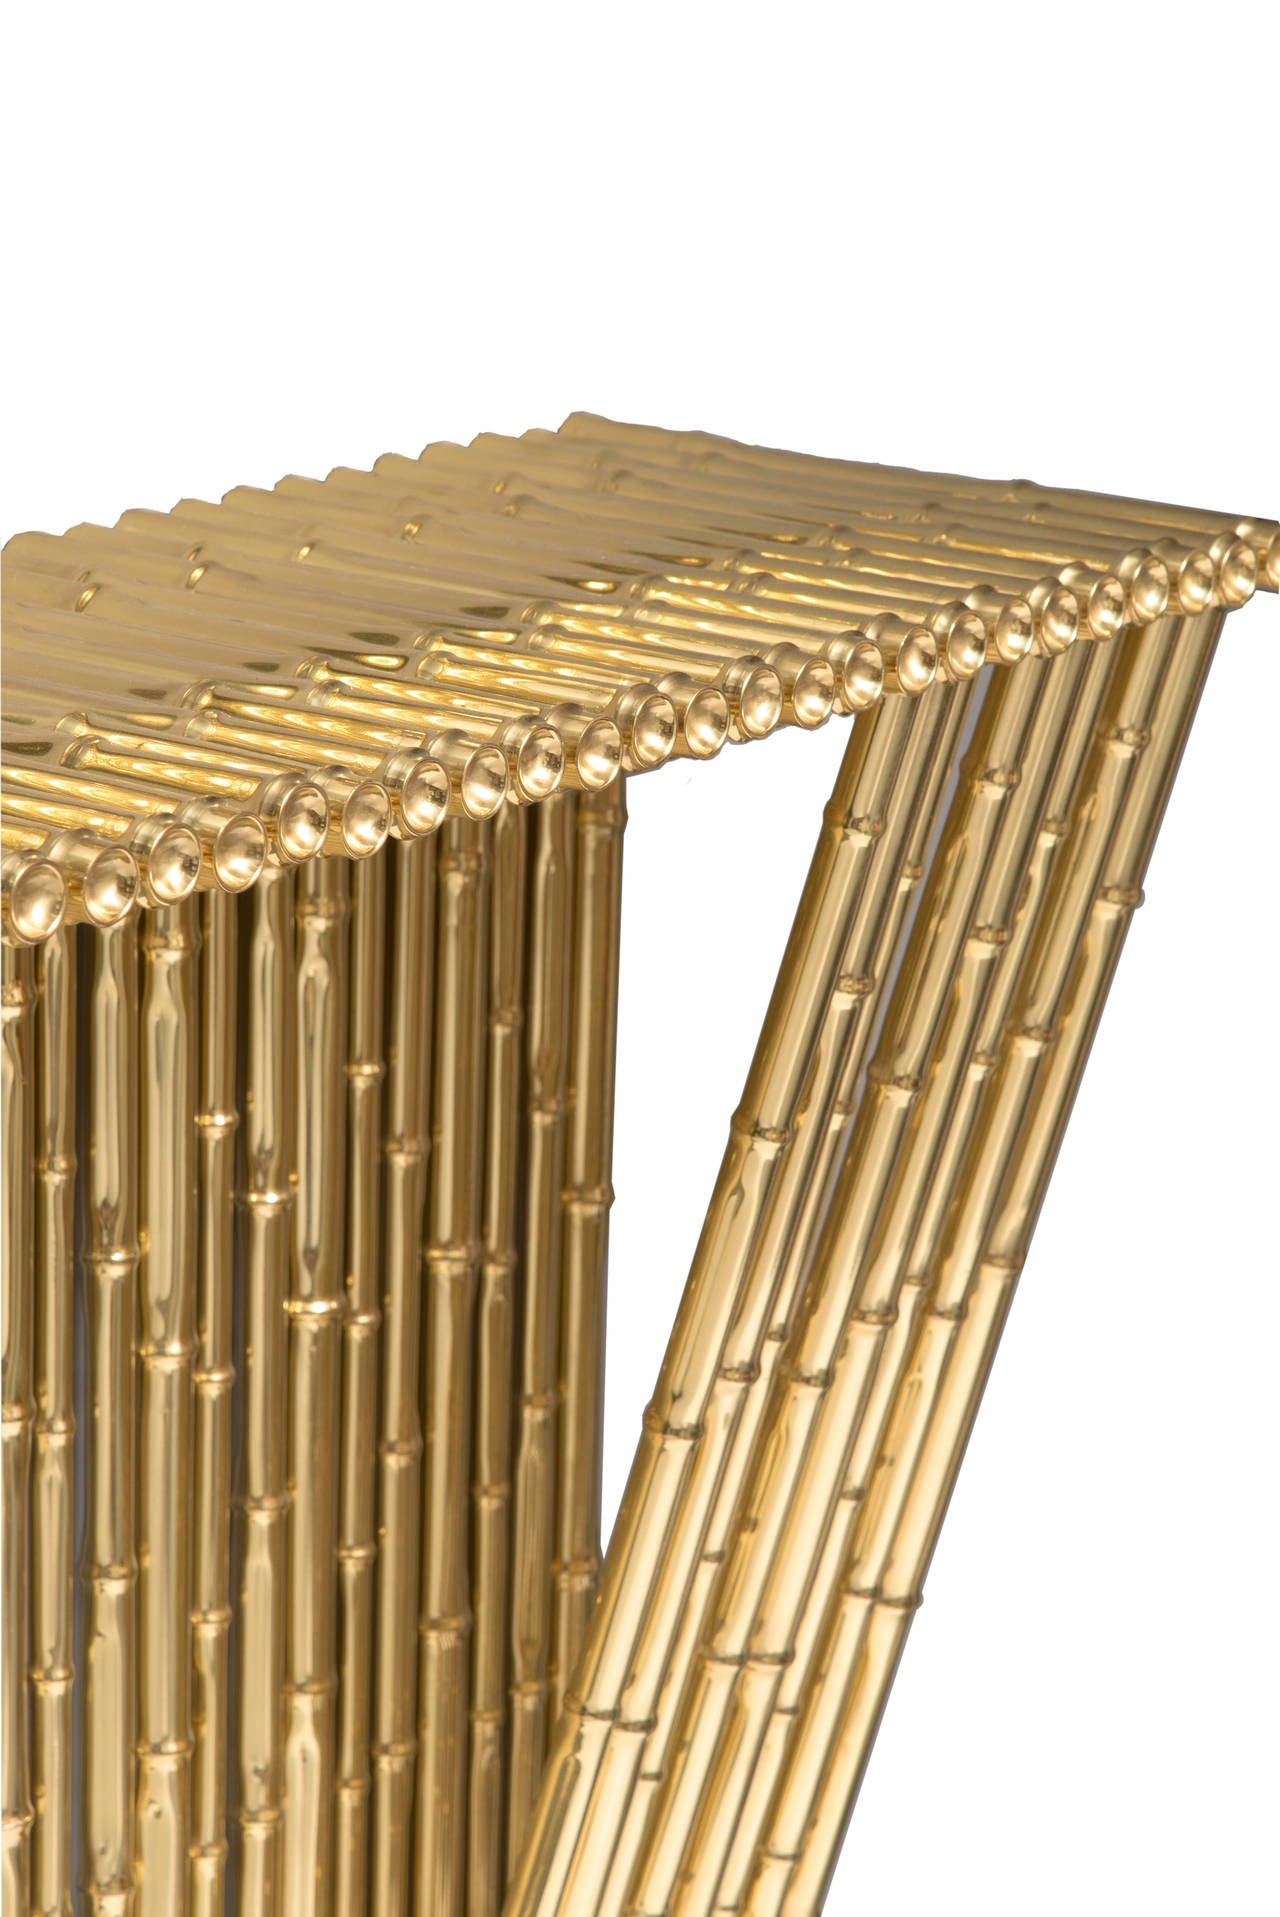 Mid-Century Modern Ferruccio Laviani Console Table in Gold-Plated Brass, circa 2010 Italy